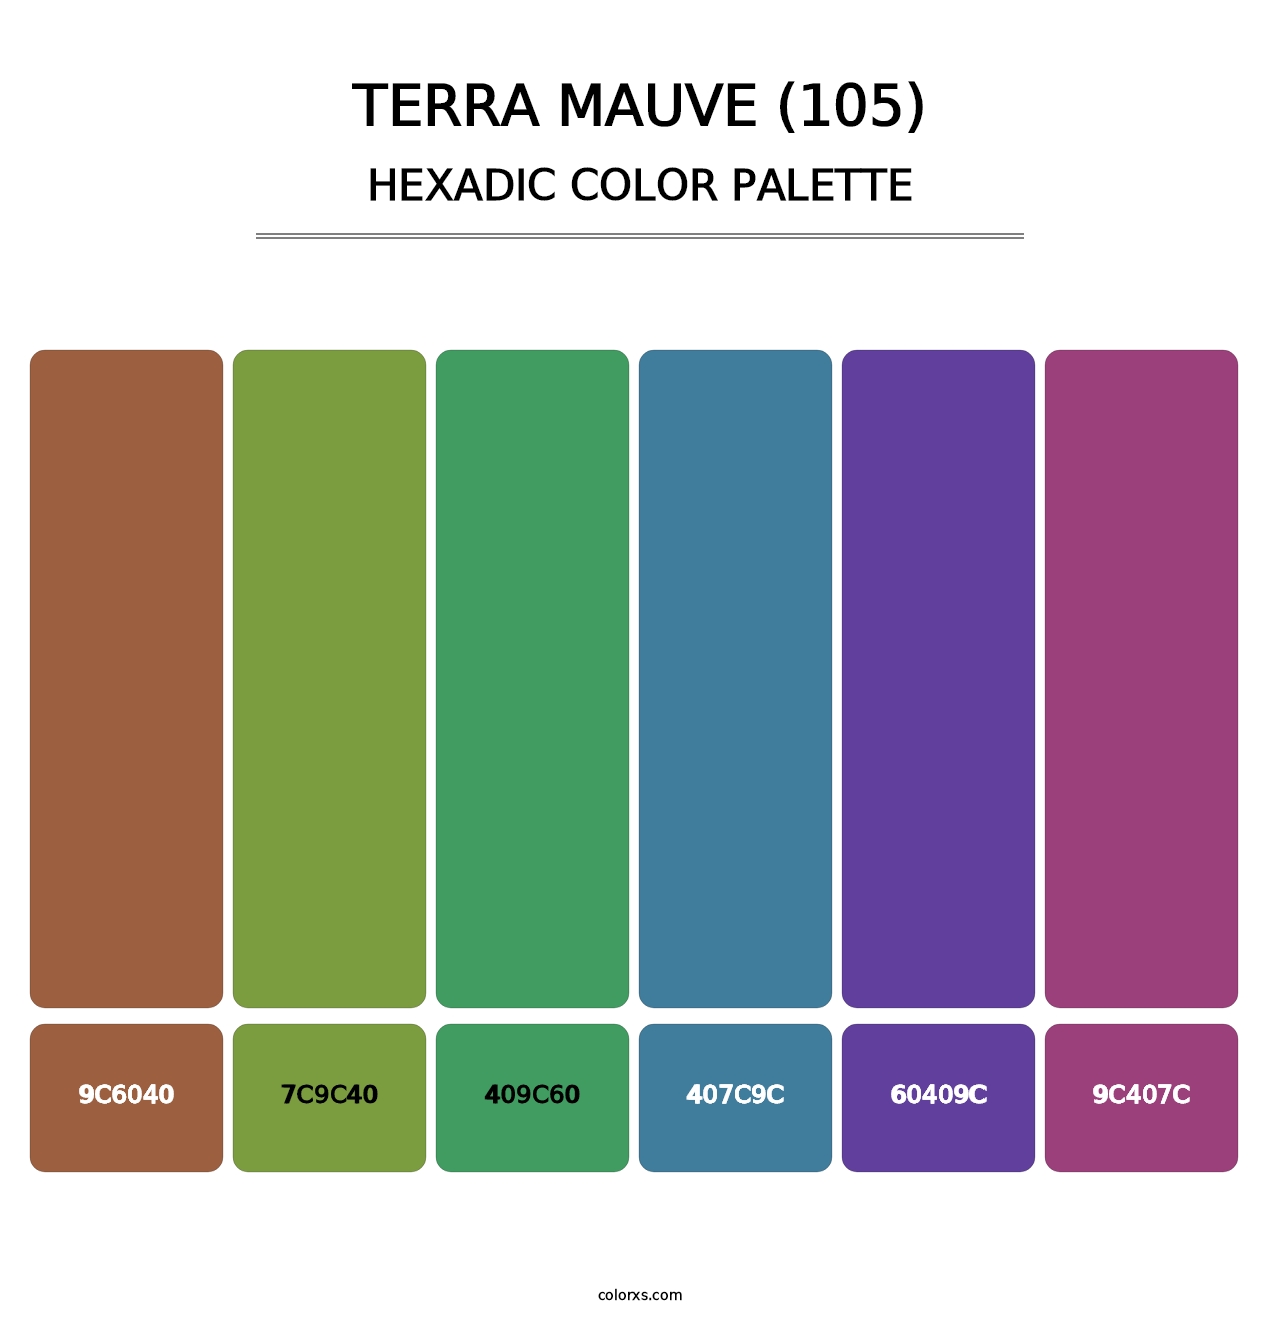 Terra Mauve (105) - Hexadic Color Palette